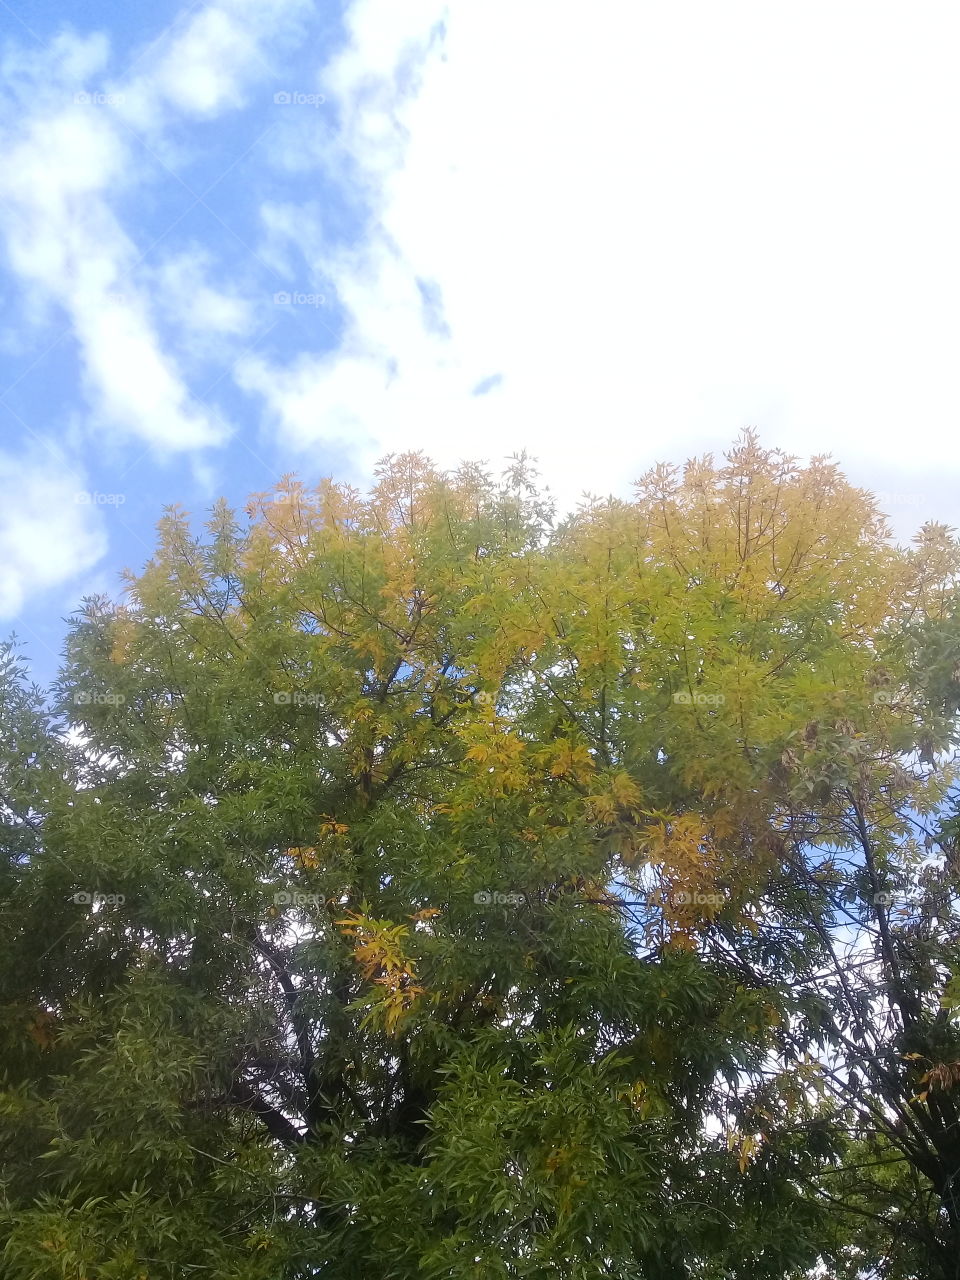 imagen de la copa de un árbol con buena parte de su follaje amarillo a causa de la llegada del otoño.